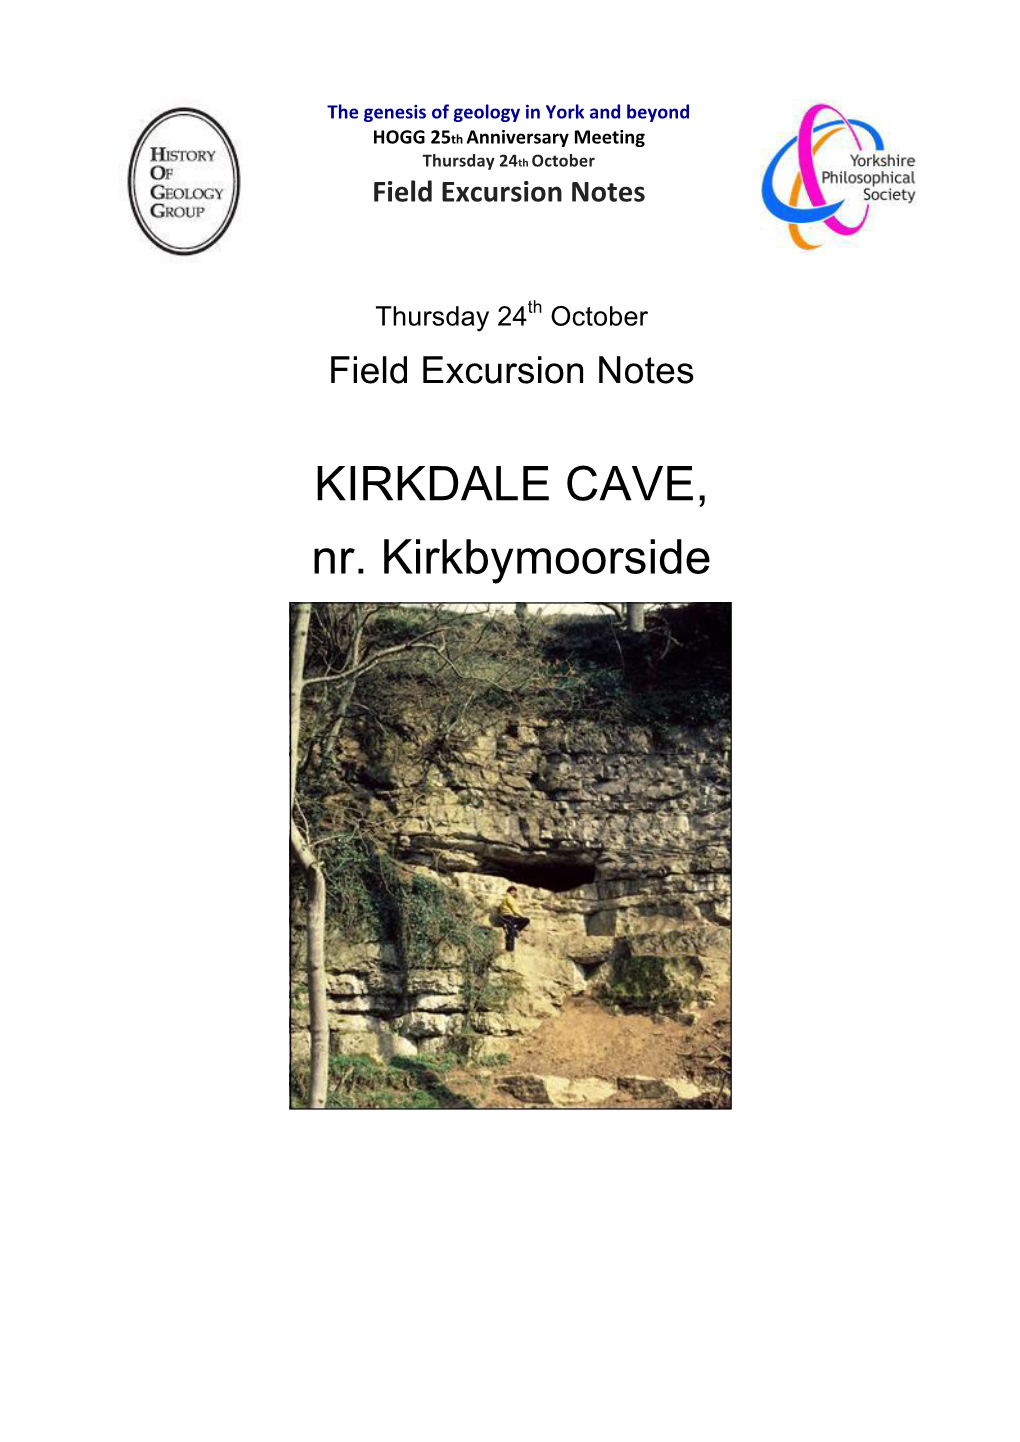 KIRKDALE CAVE, Nr. Kirkbymoorside